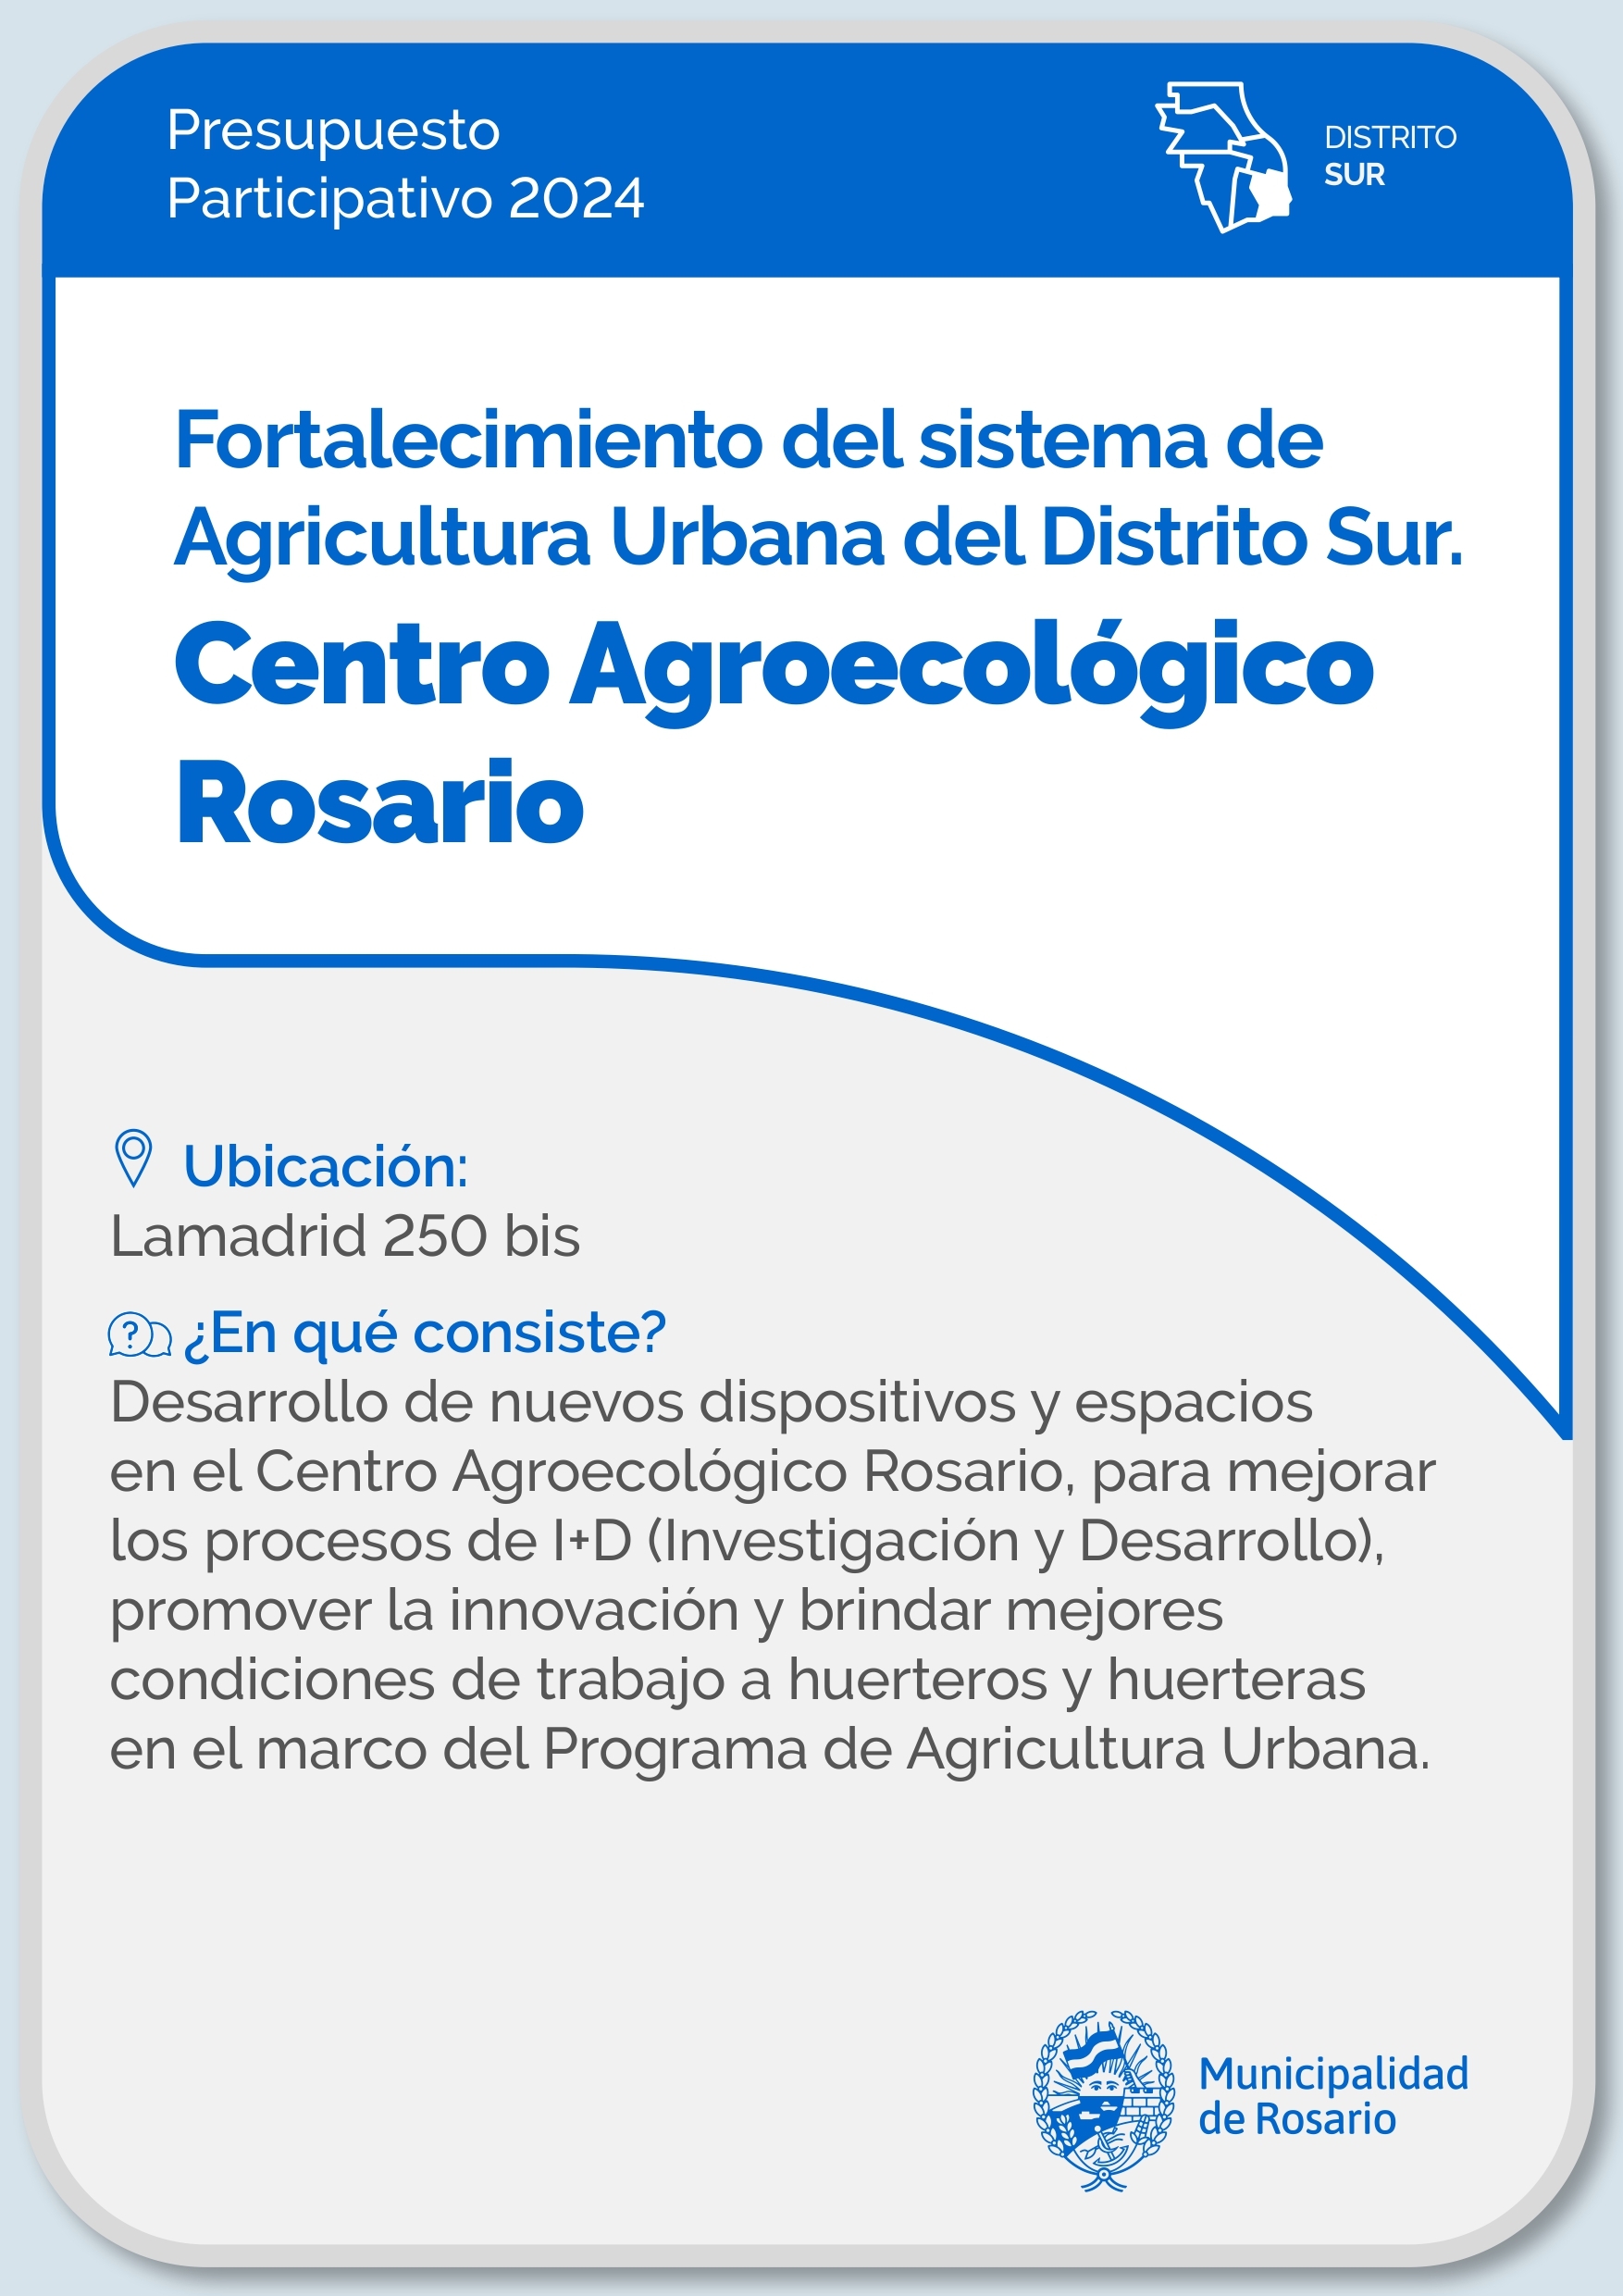 Fortalecimiento del sistema de Agricultura Urbana. Centro Agroecológico Rosario  - Distrito Sur